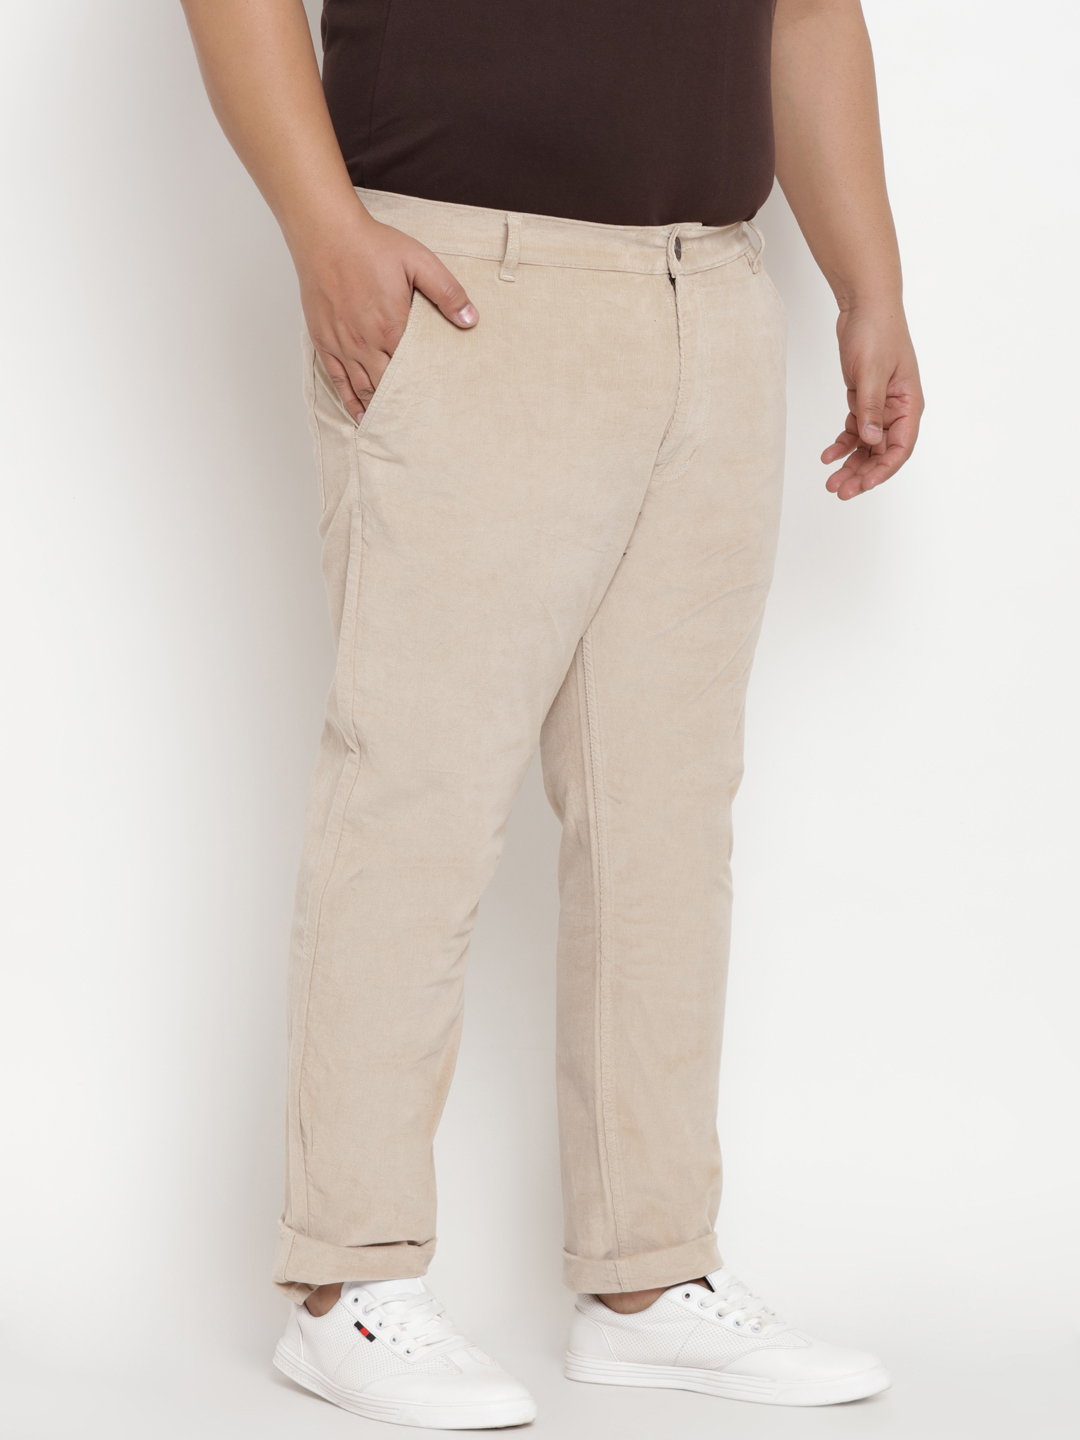 bottomwear/trousers/BEPLJPTR2155C/bepljptr2155c-6.jpg